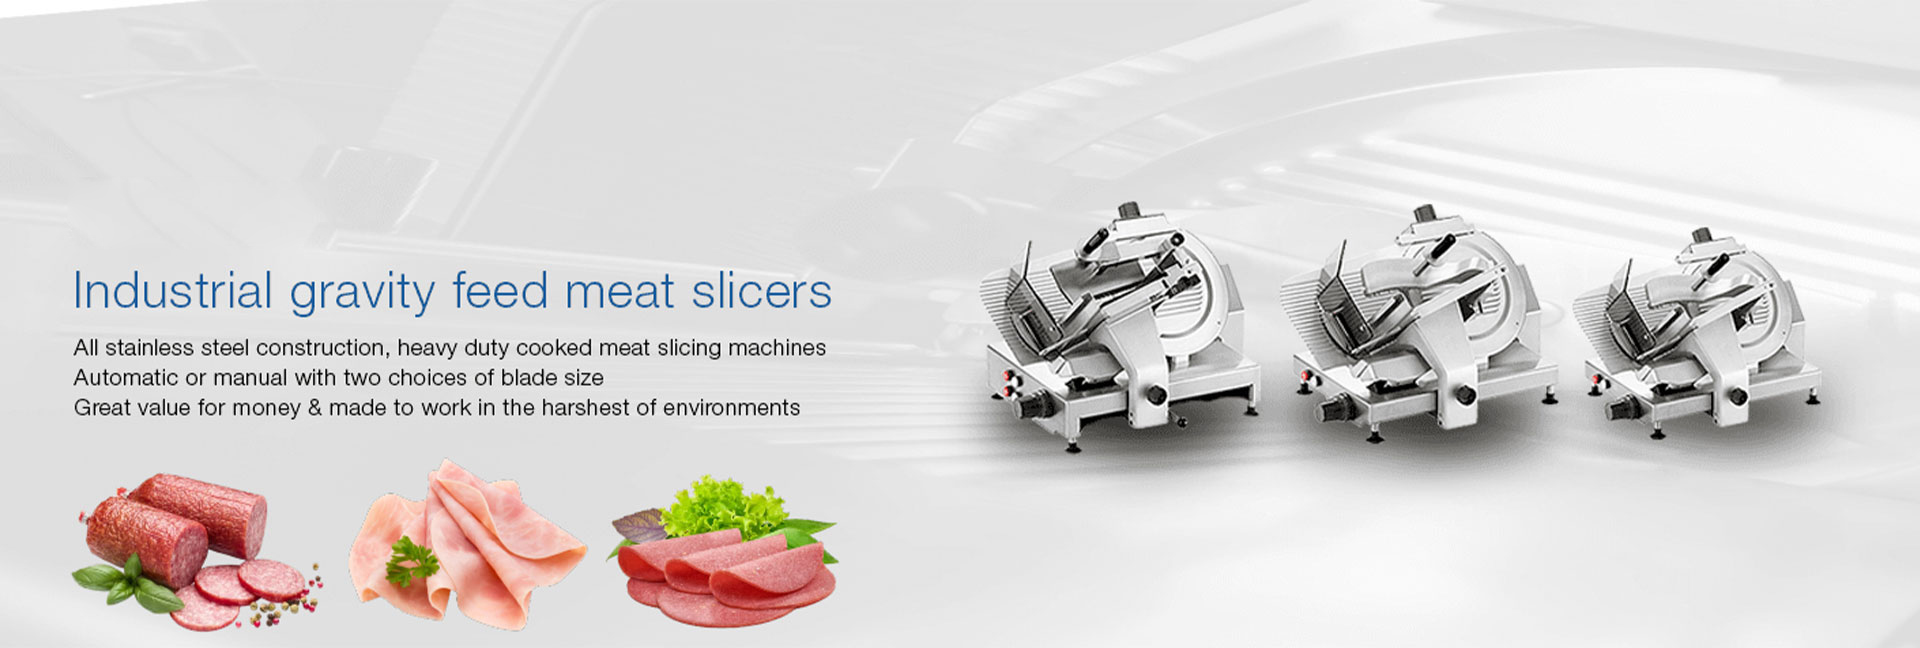 meat-slicer-banner-1